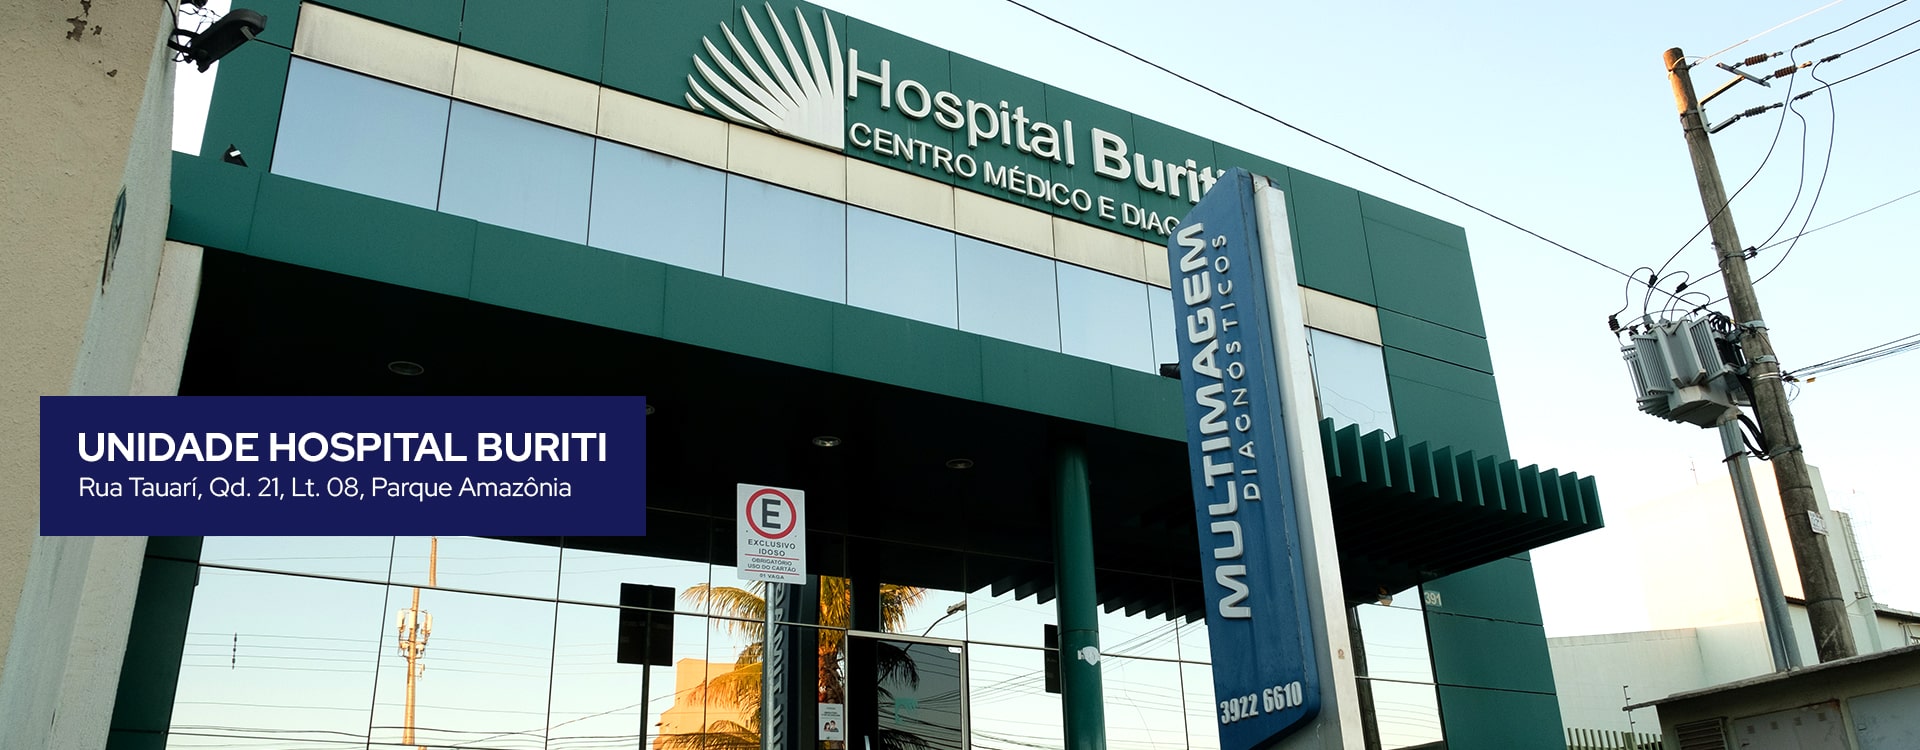 Imagem do slide: Unidade Hospital Buriti - Multimagem Diagnósticos